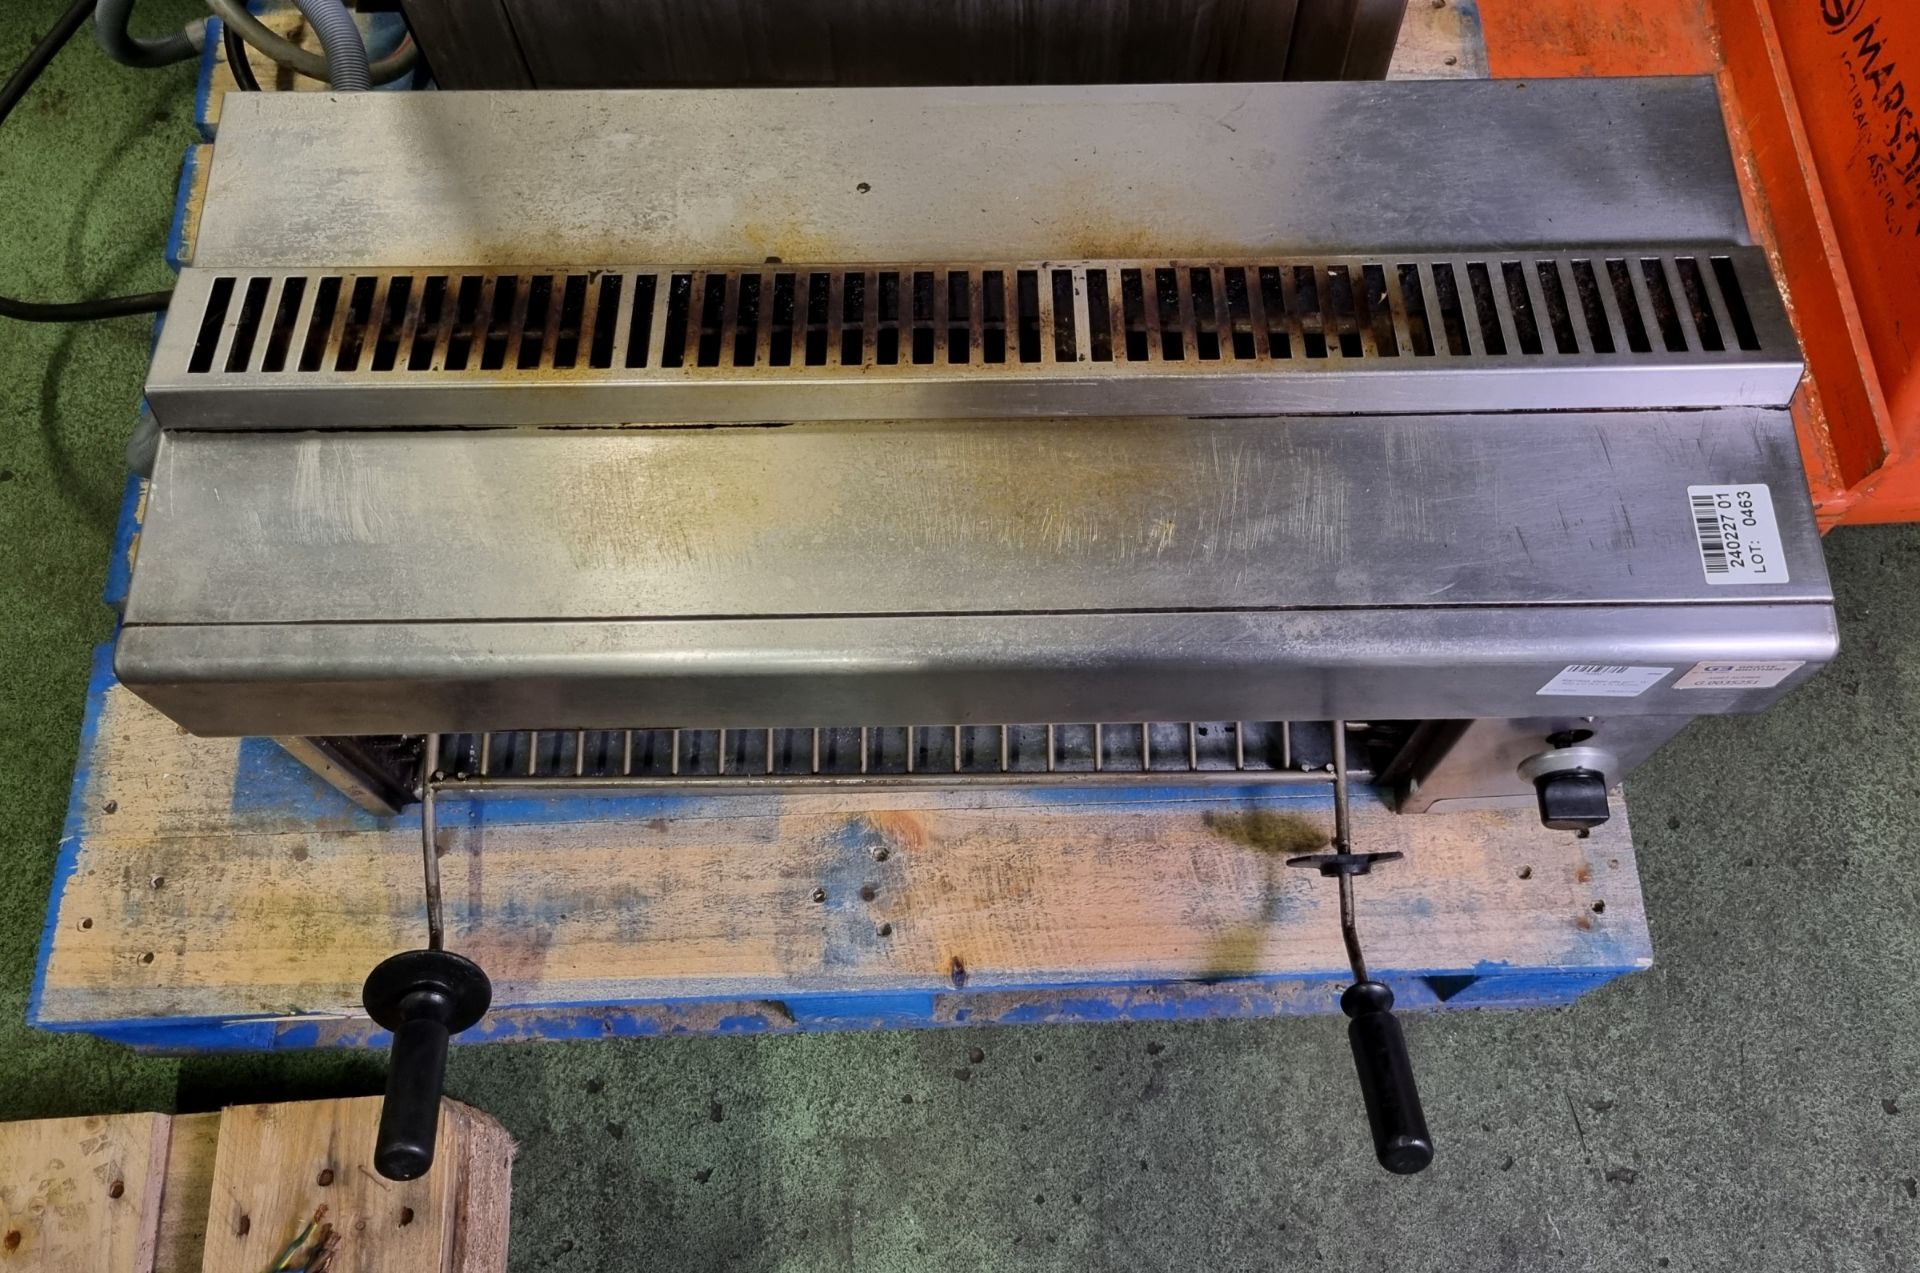 Stainless steel gas grill - W 800 x D 600 x H 350mm - Bild 2 aus 3